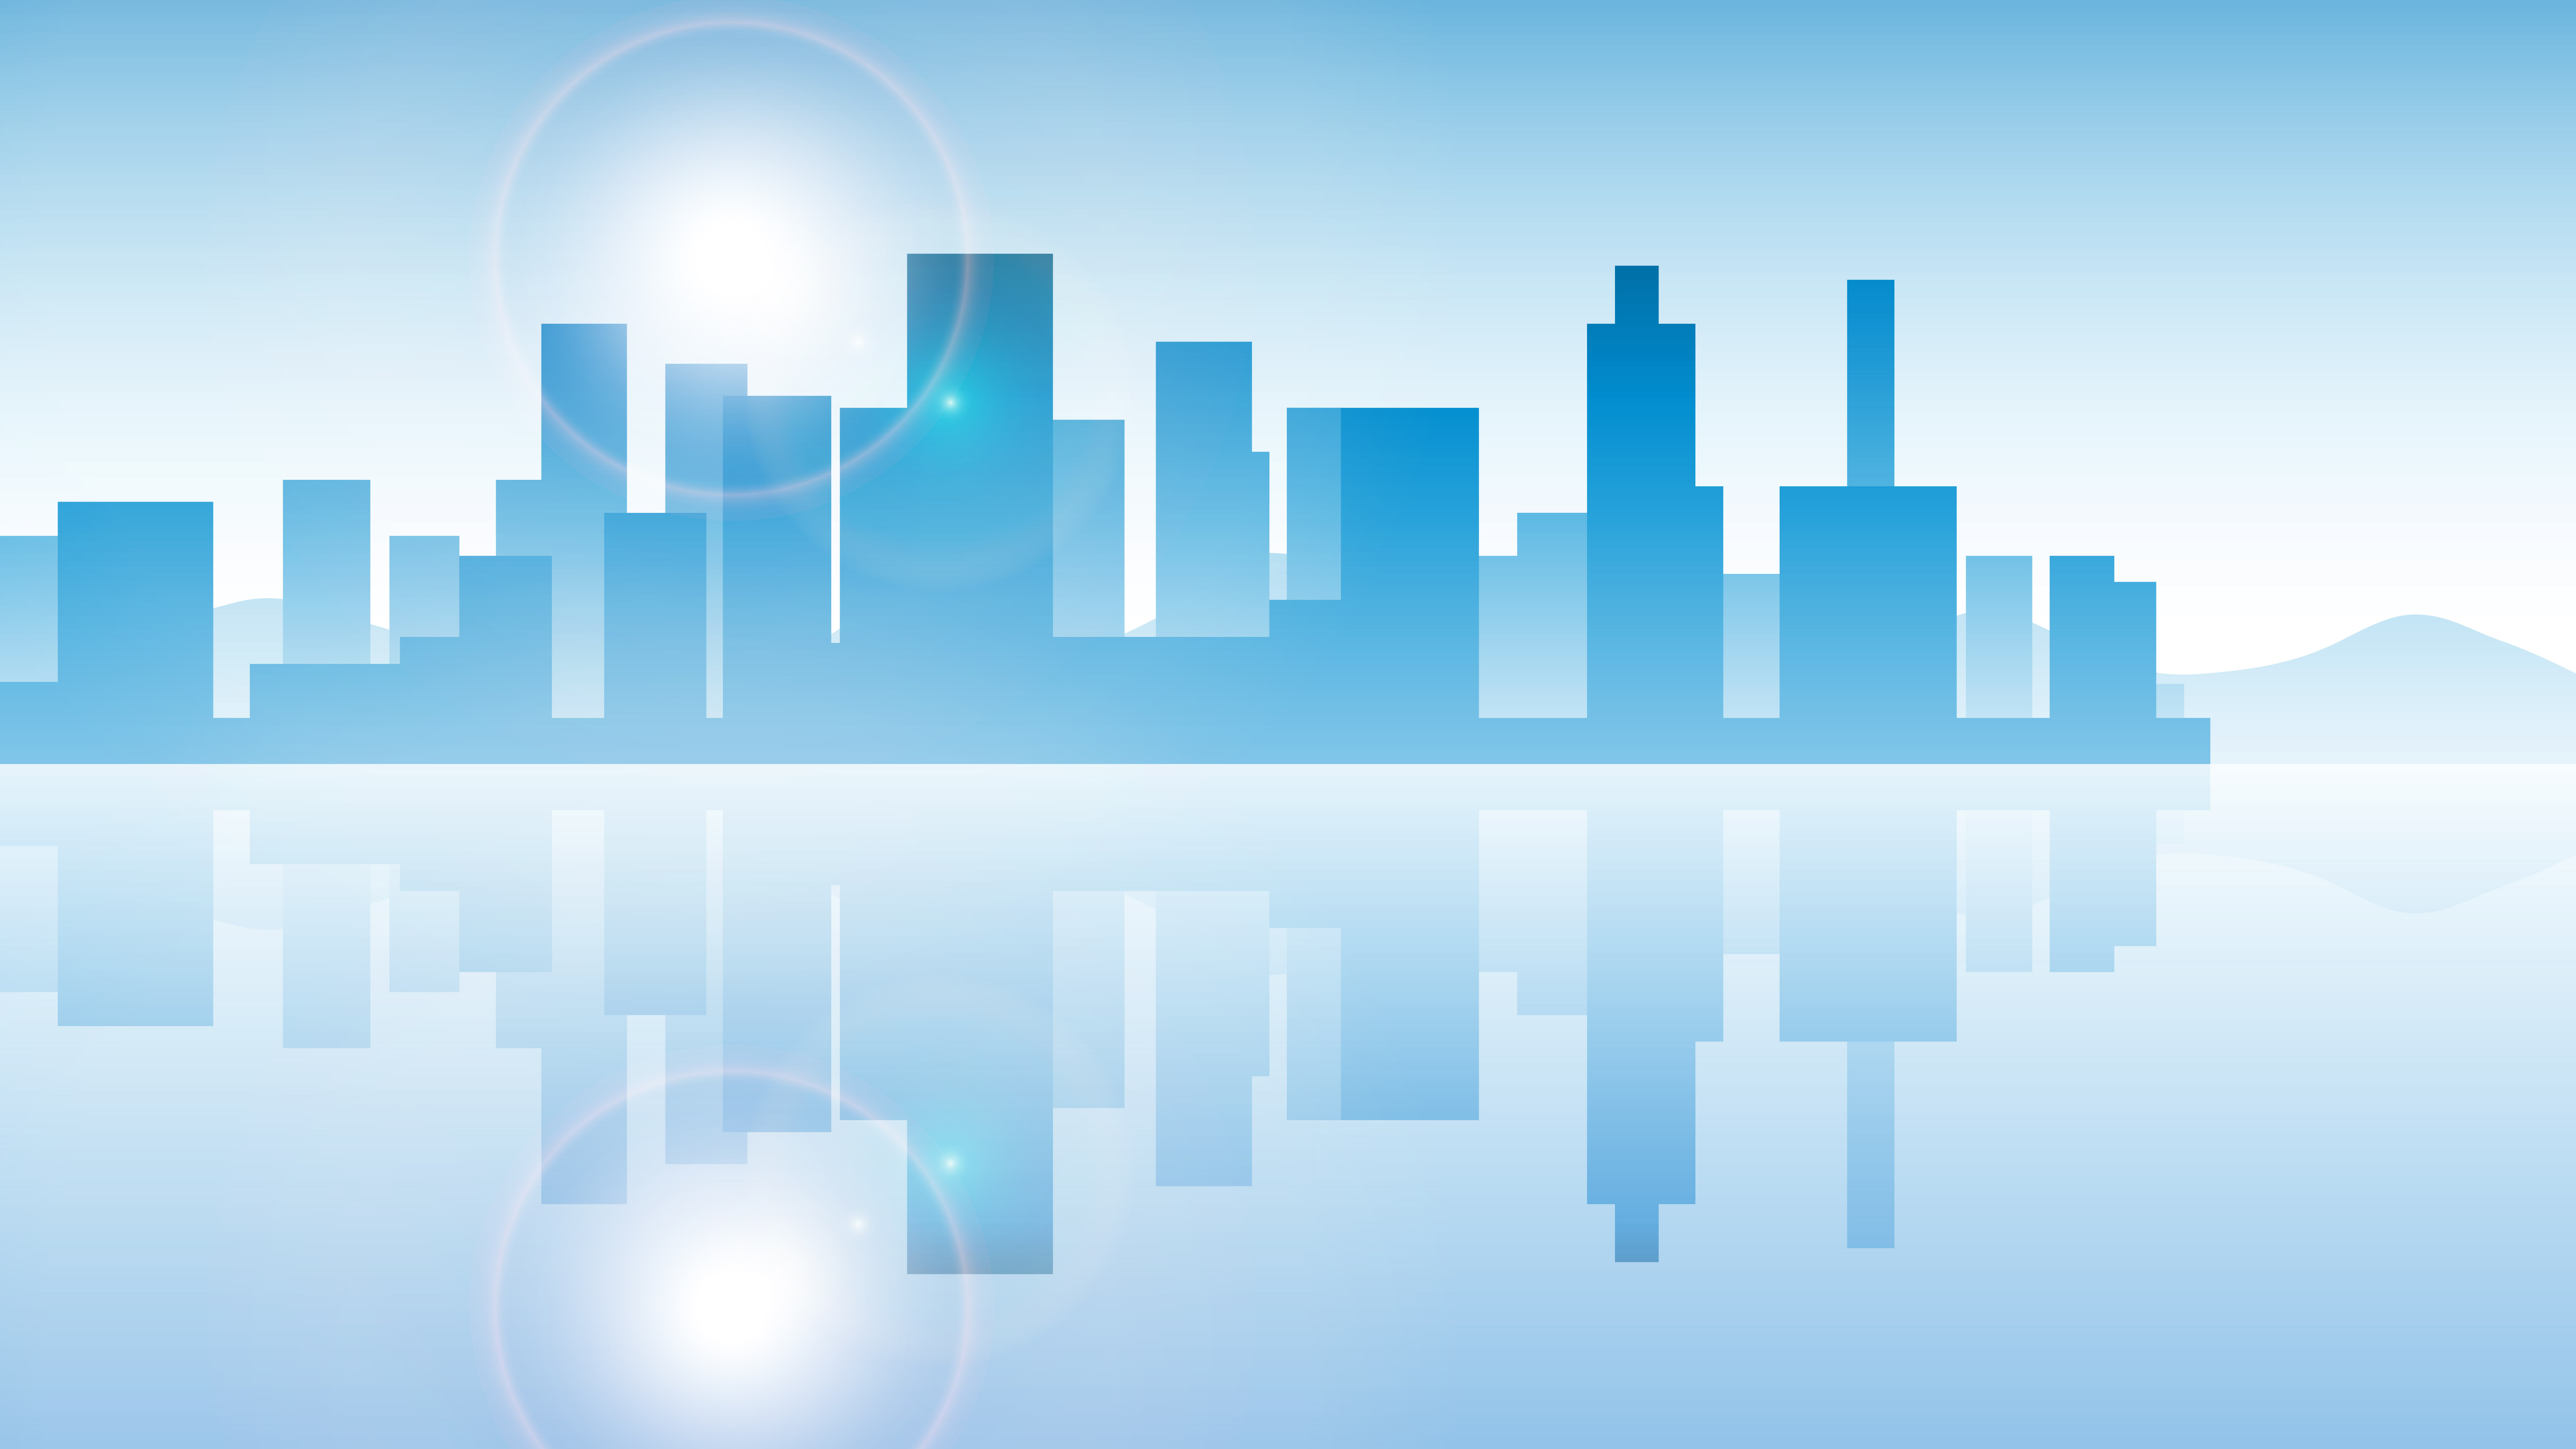 Grafika: zarys wysokich budynków miasta, błękitne tło, na dole lustrzane odbicie budynków, smuga światła na górze